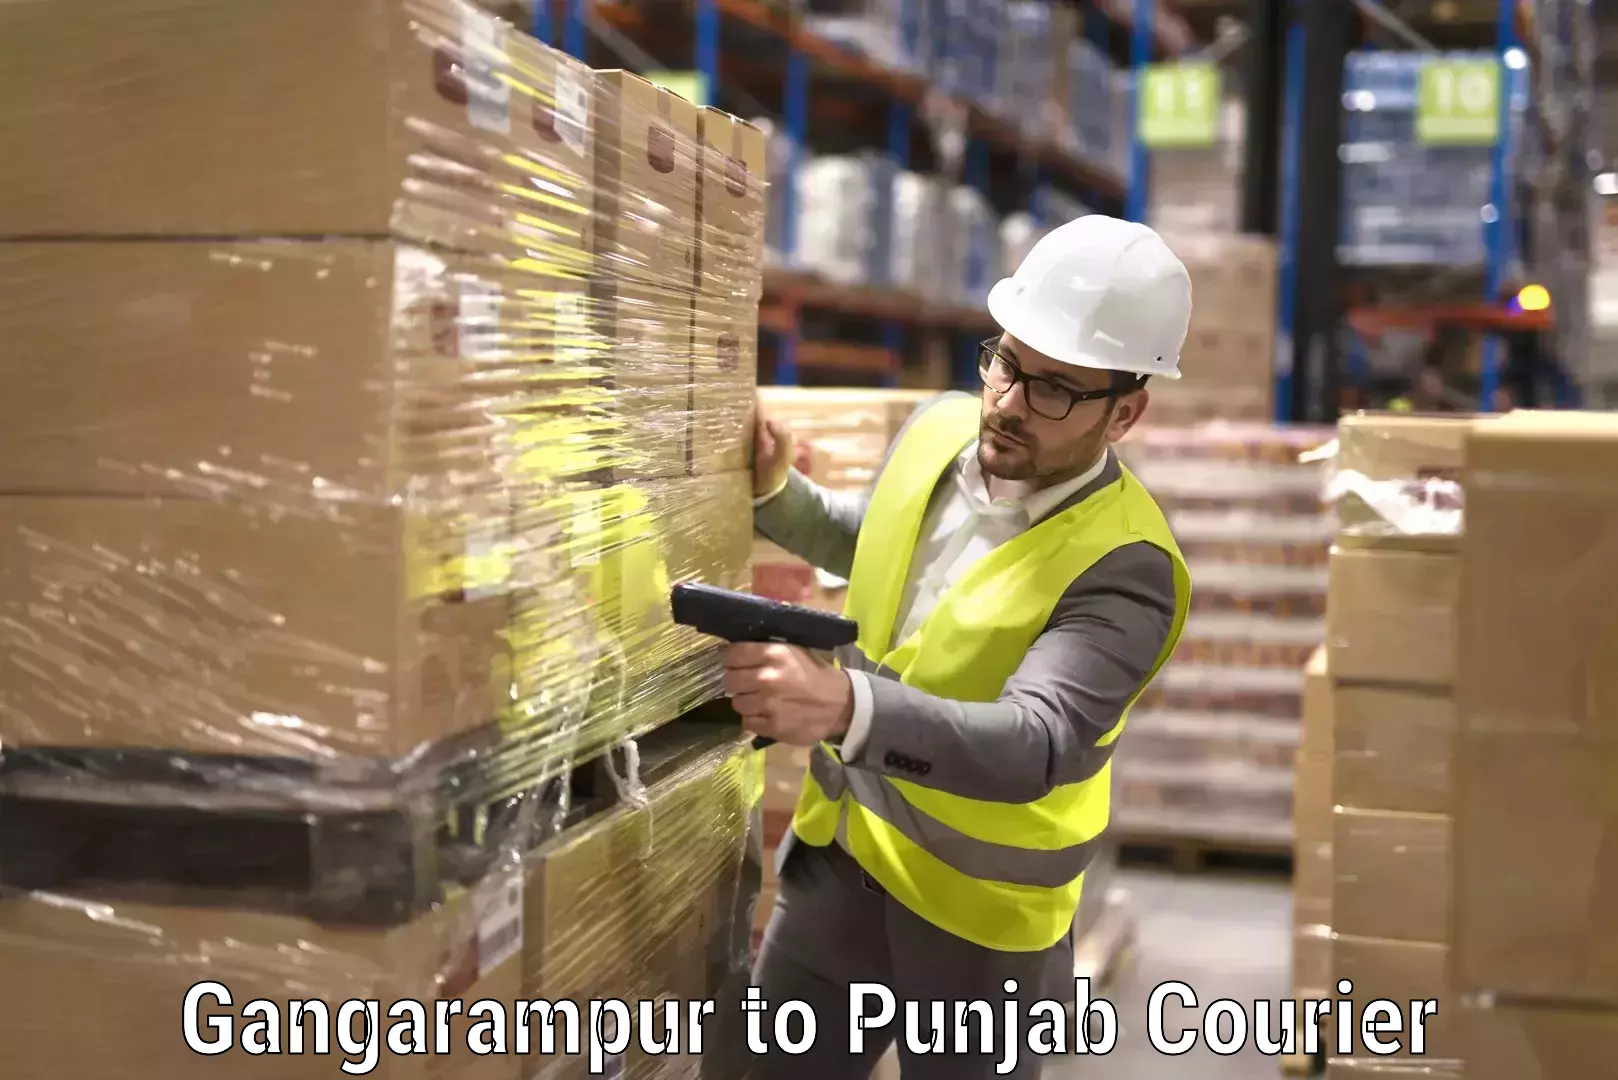 Furniture moving service Gangarampur to Punjab